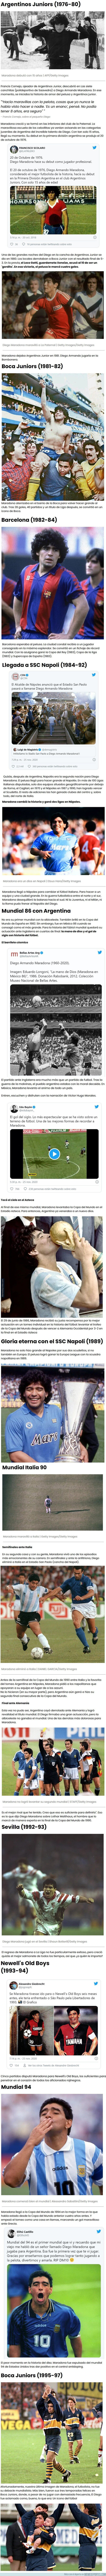 1121284 - La extraordinaria carrera de Diego Maradona resumida en imágenes